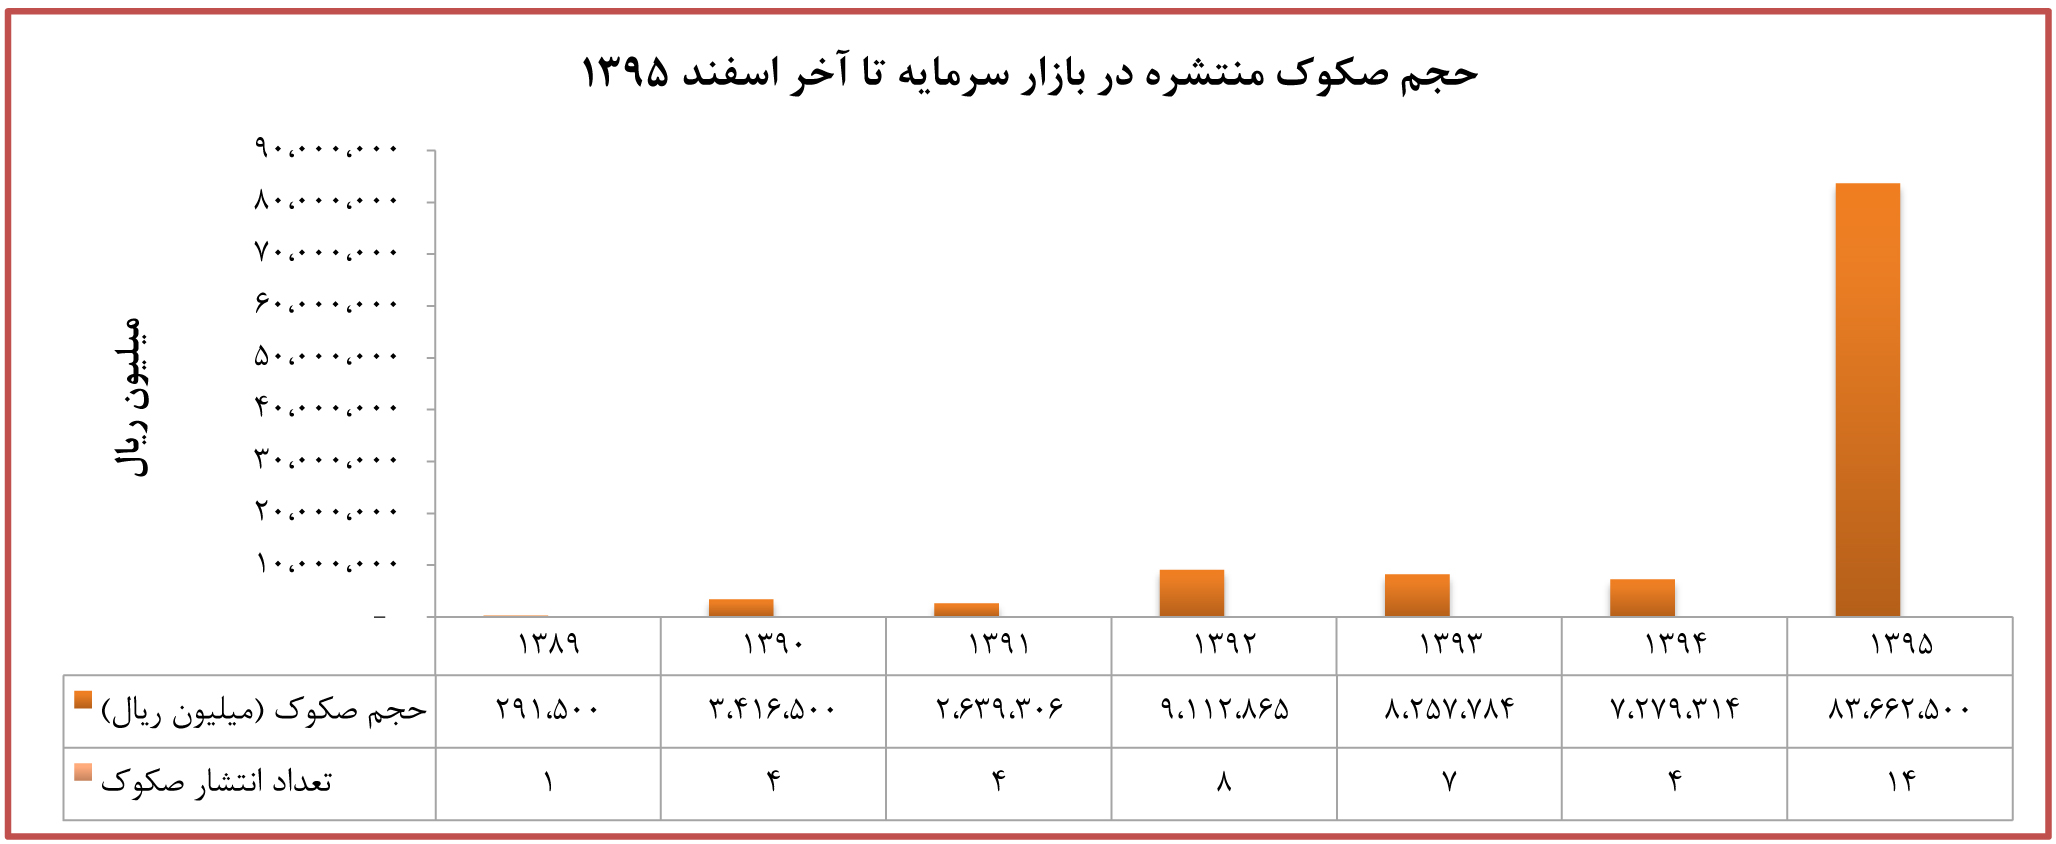 نمودار حجم صکوک منتشره در بازار سرمایه ایران